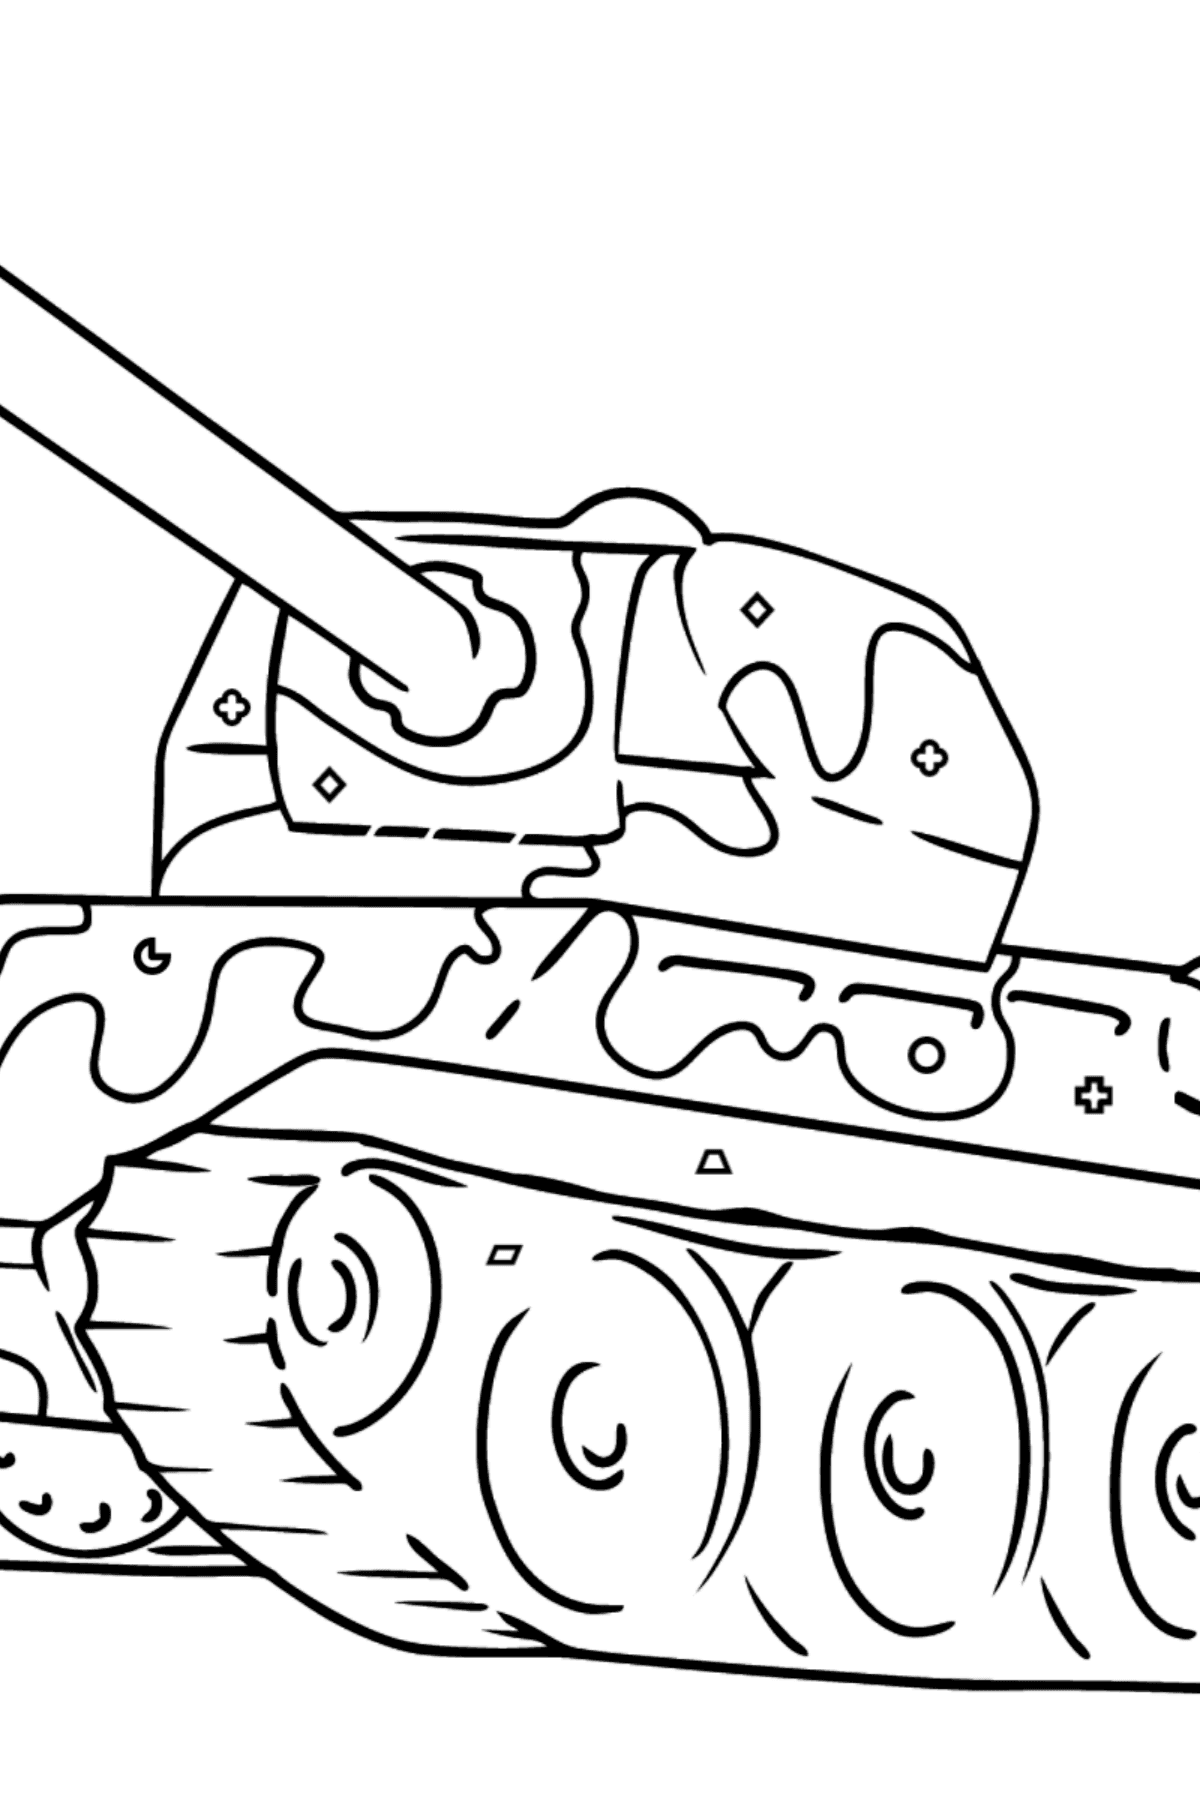 Desenho para colorir - tanque com arma antiaérea - Colorir por Formas Geométricas para Crianças